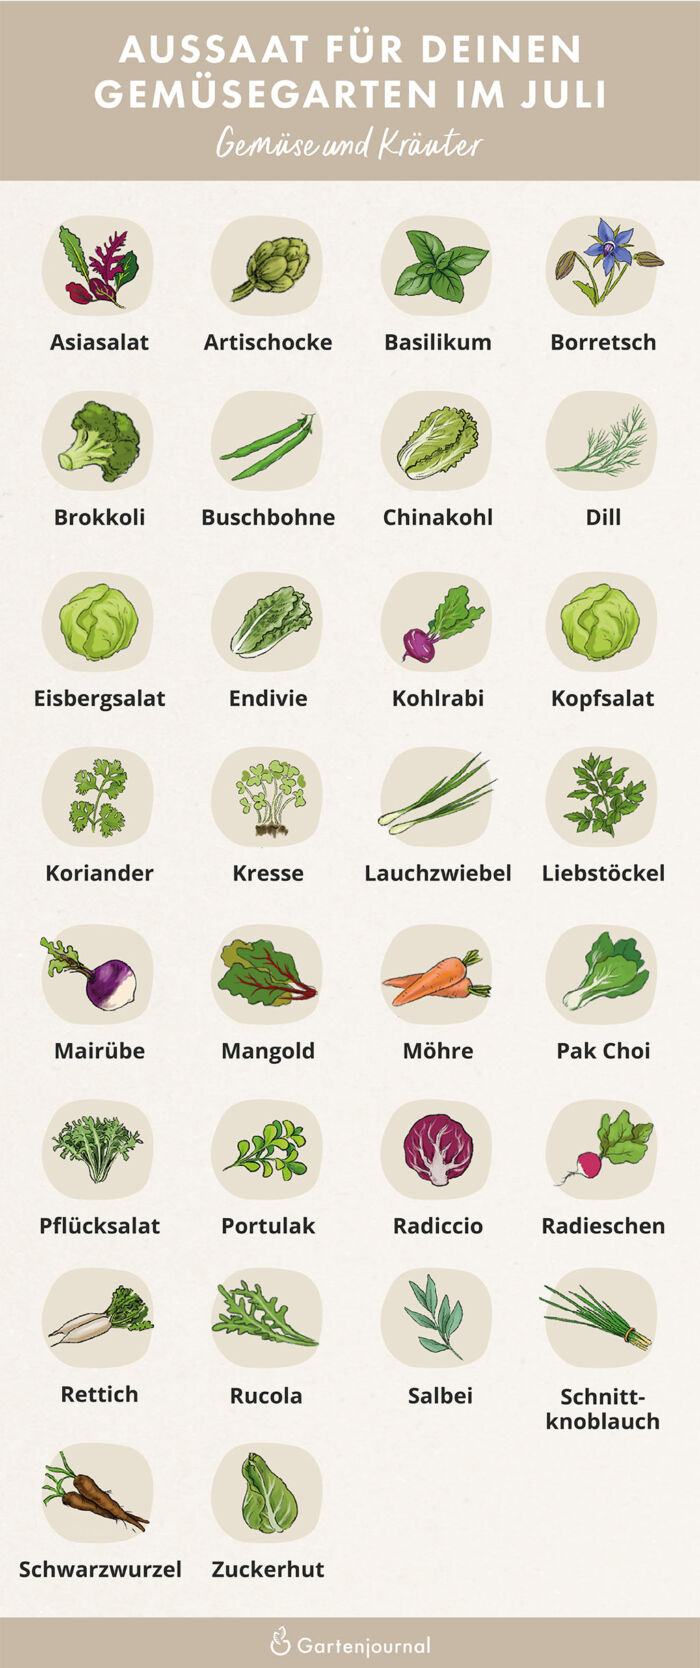 Illustration die zeigt, welche Gemüse und Kräuter im Juli ausgesät werden